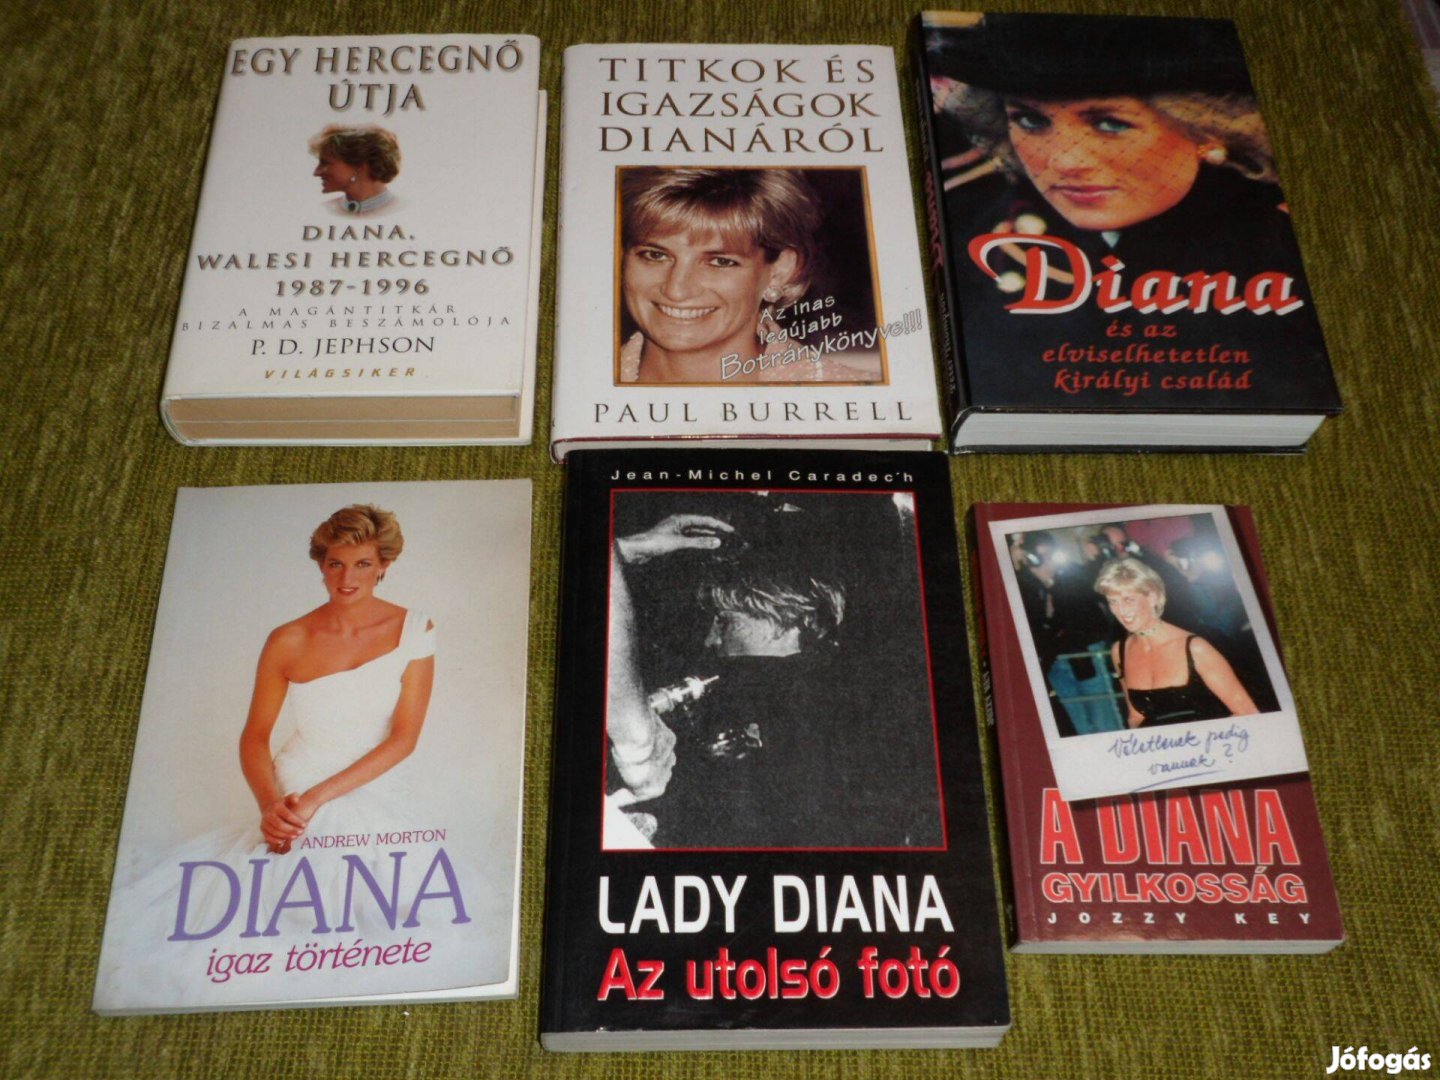 Lady Diana könyvcsomag hat könyvből összeállítva: